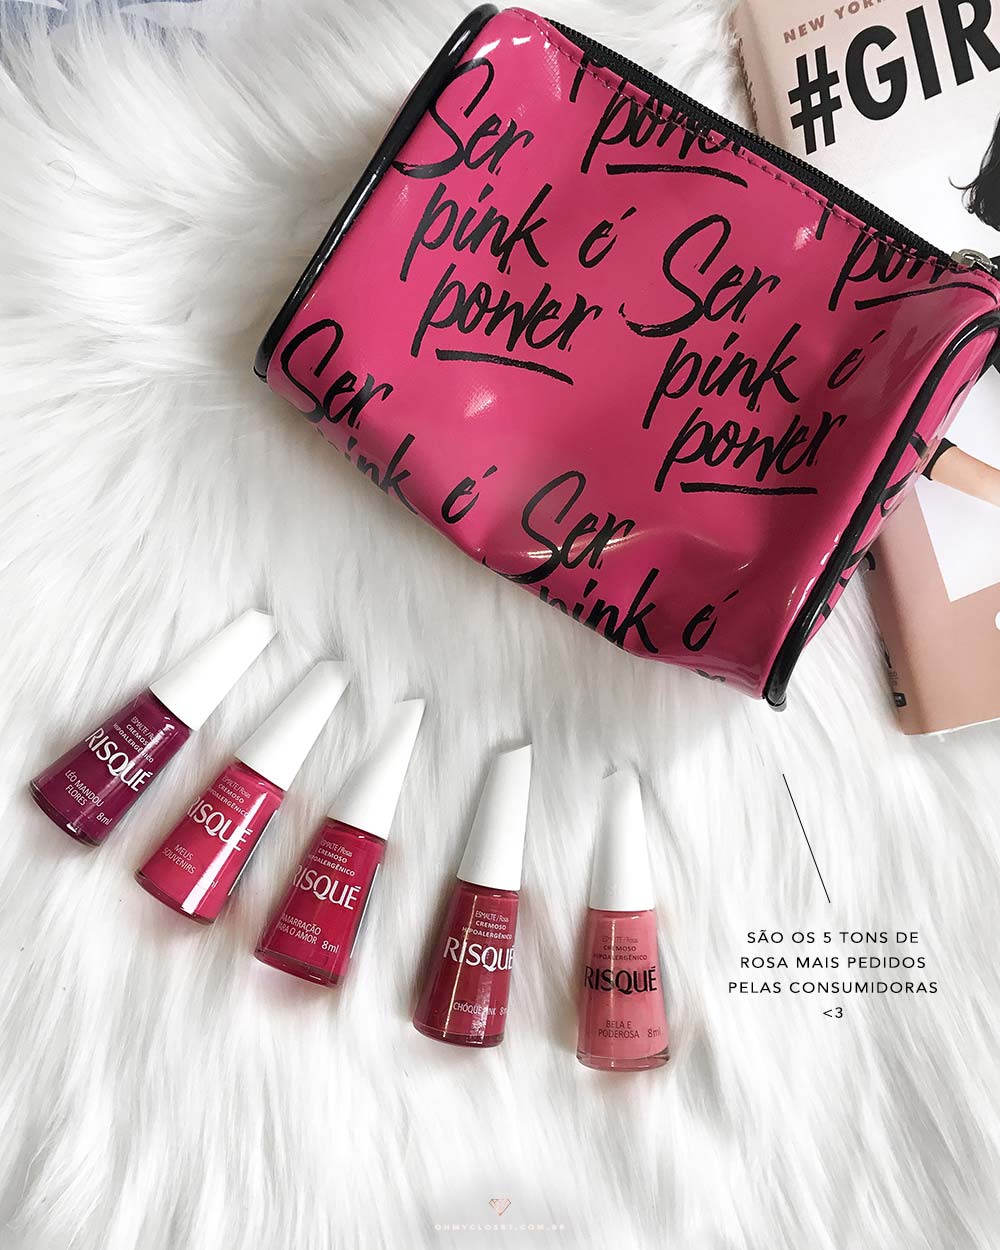 As 5 cores da coleção Ser Pink É Power da Risqué, por Mônica Araújo.